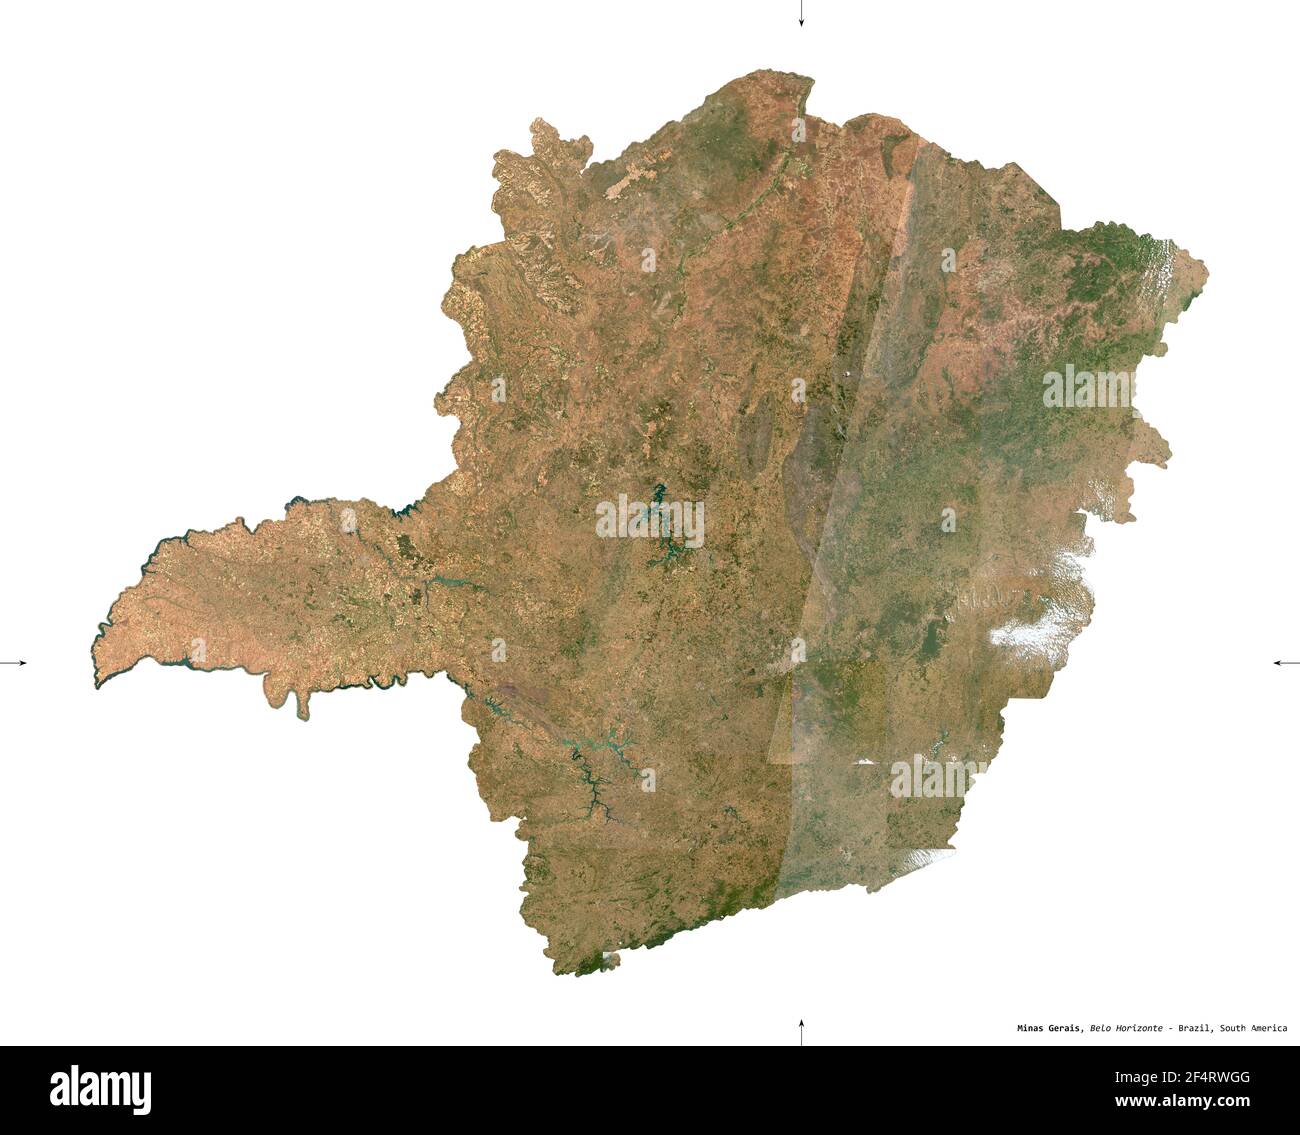 Minas Gerais, stato del Brasile. Immagini satellitari Sentinel-2. Forma isolata su solido bianco. Descrizione, ubicazione della capitale. Contiene Co. Modificato Foto Stock